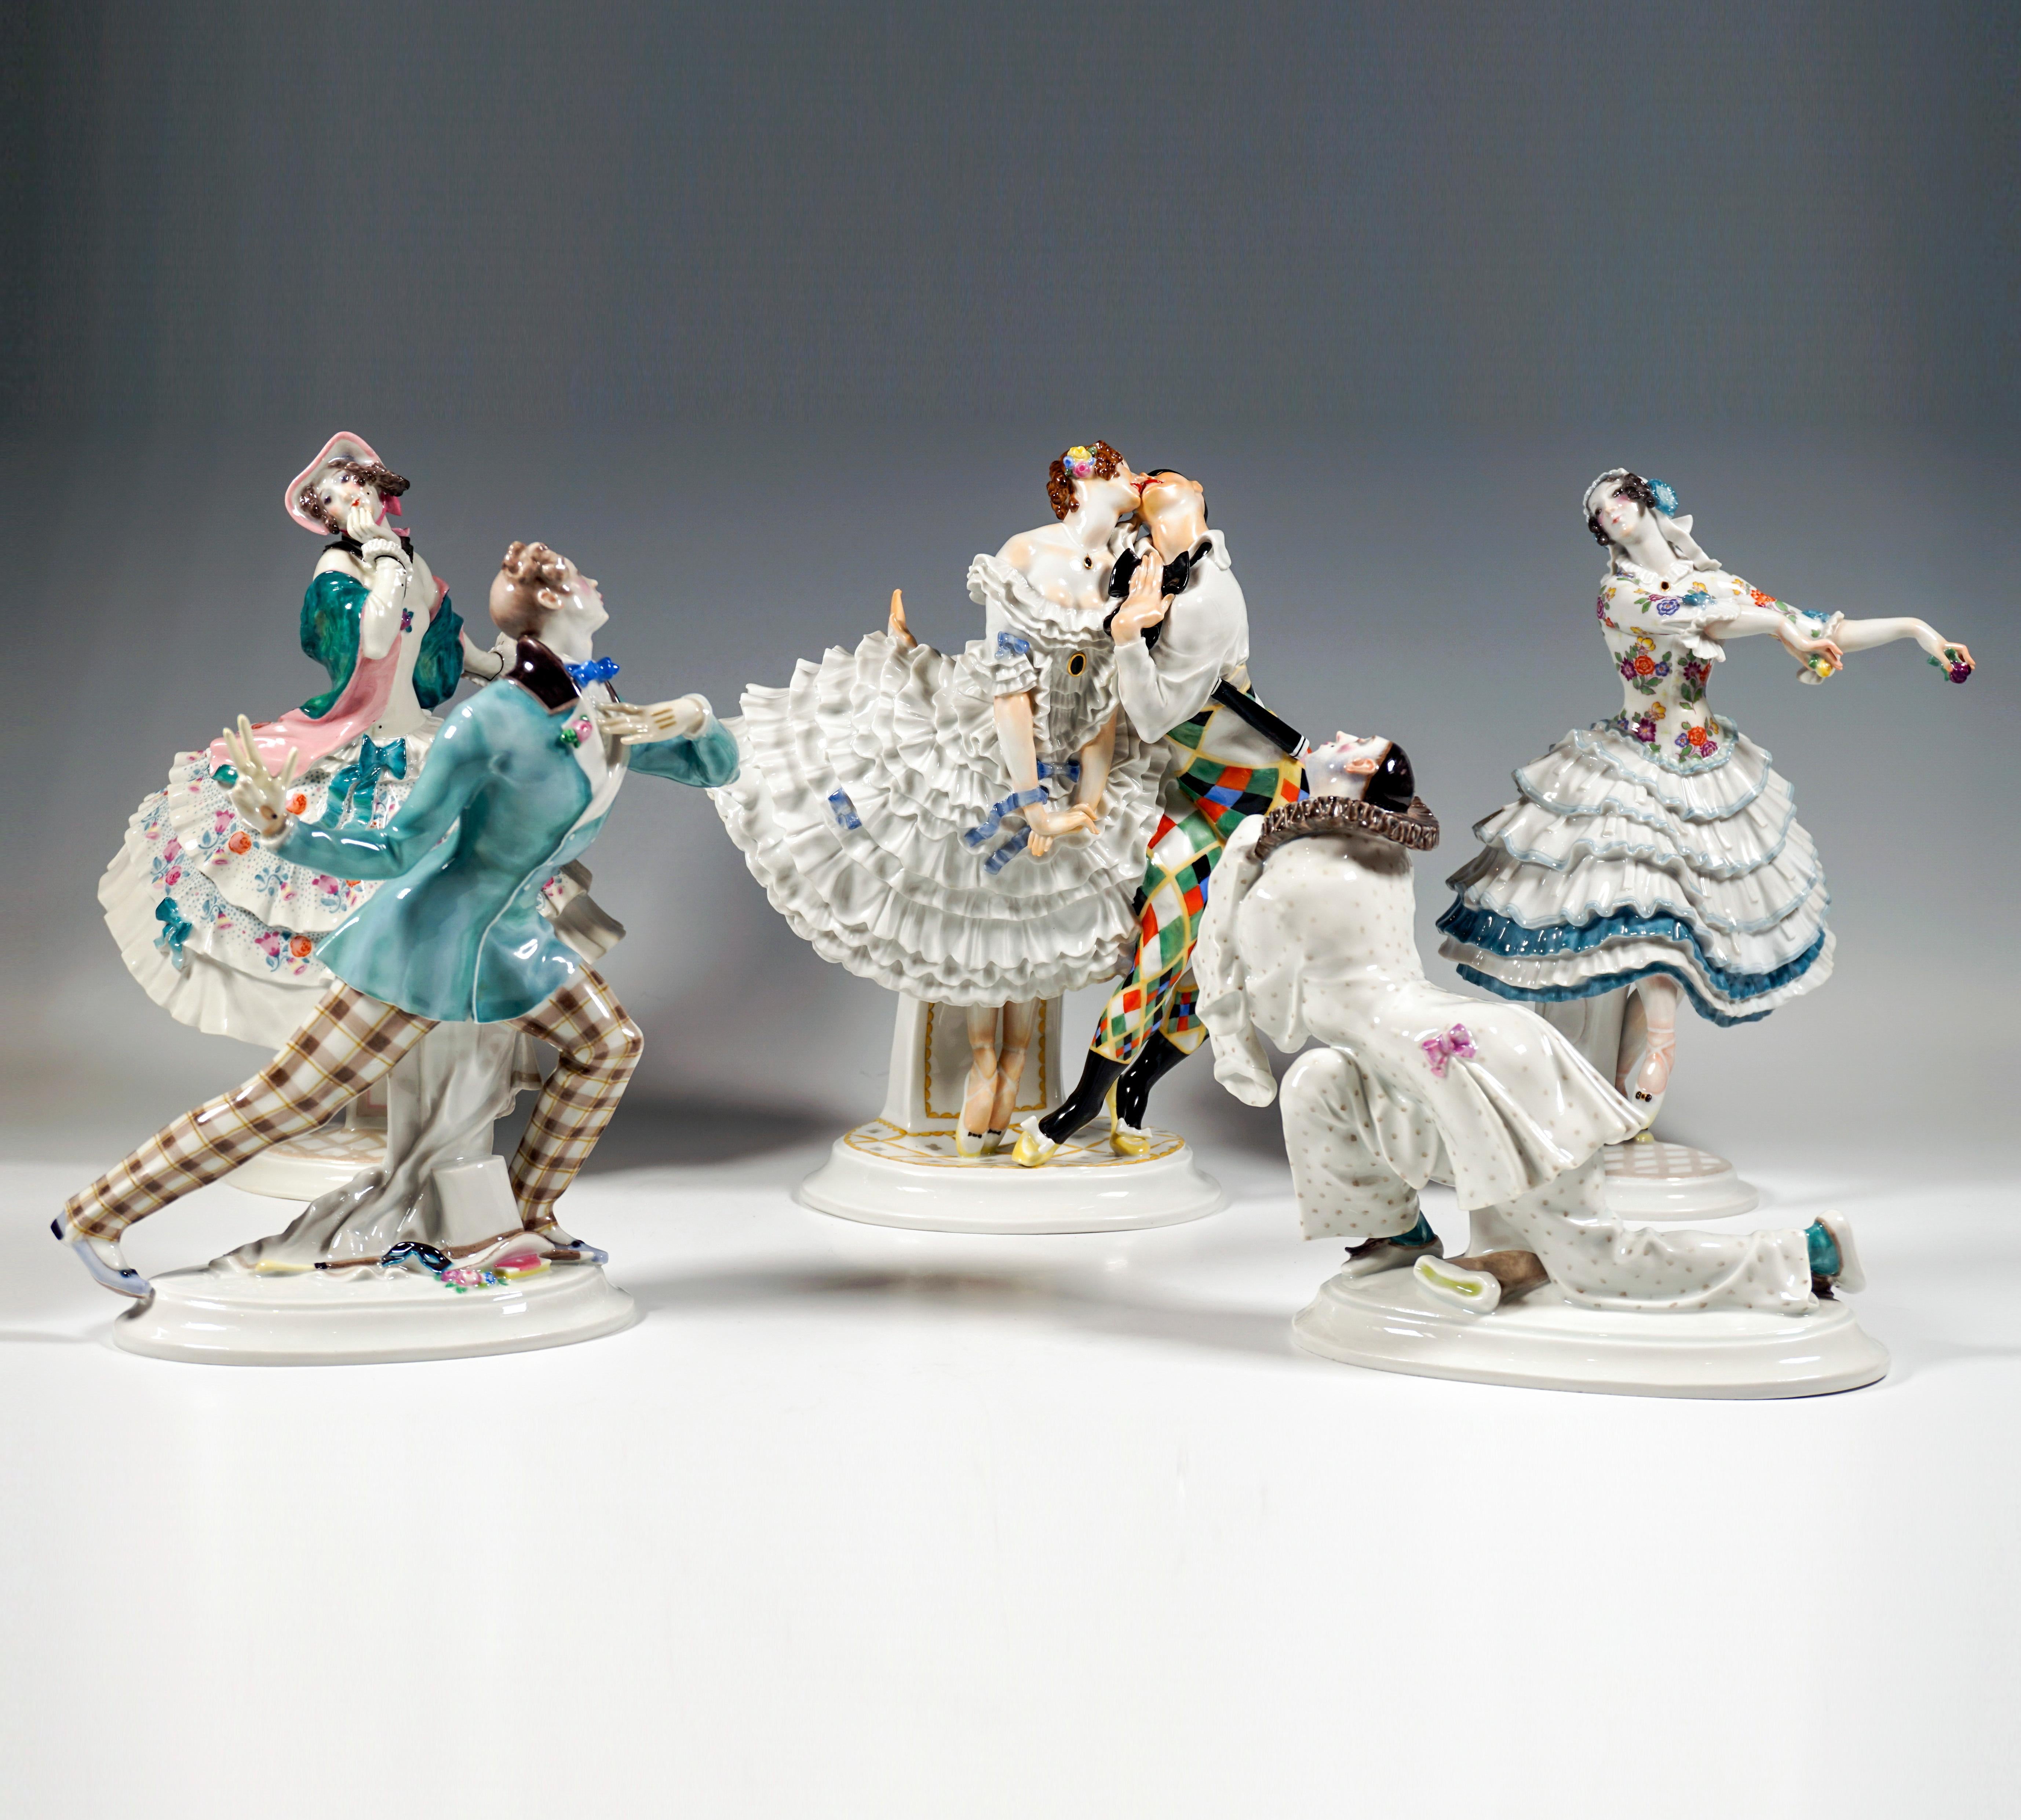 Ensemble de figurines en porcelaine de Meissen :

ARLEQUIN ET ANCOLIE
Couple de danseurs représentant les figures de l'Arlequin et de la Colombine : Danseuse en équilibre sur ses orteils dans une robe à crinoline élaborée au décolleté plongeant, ses